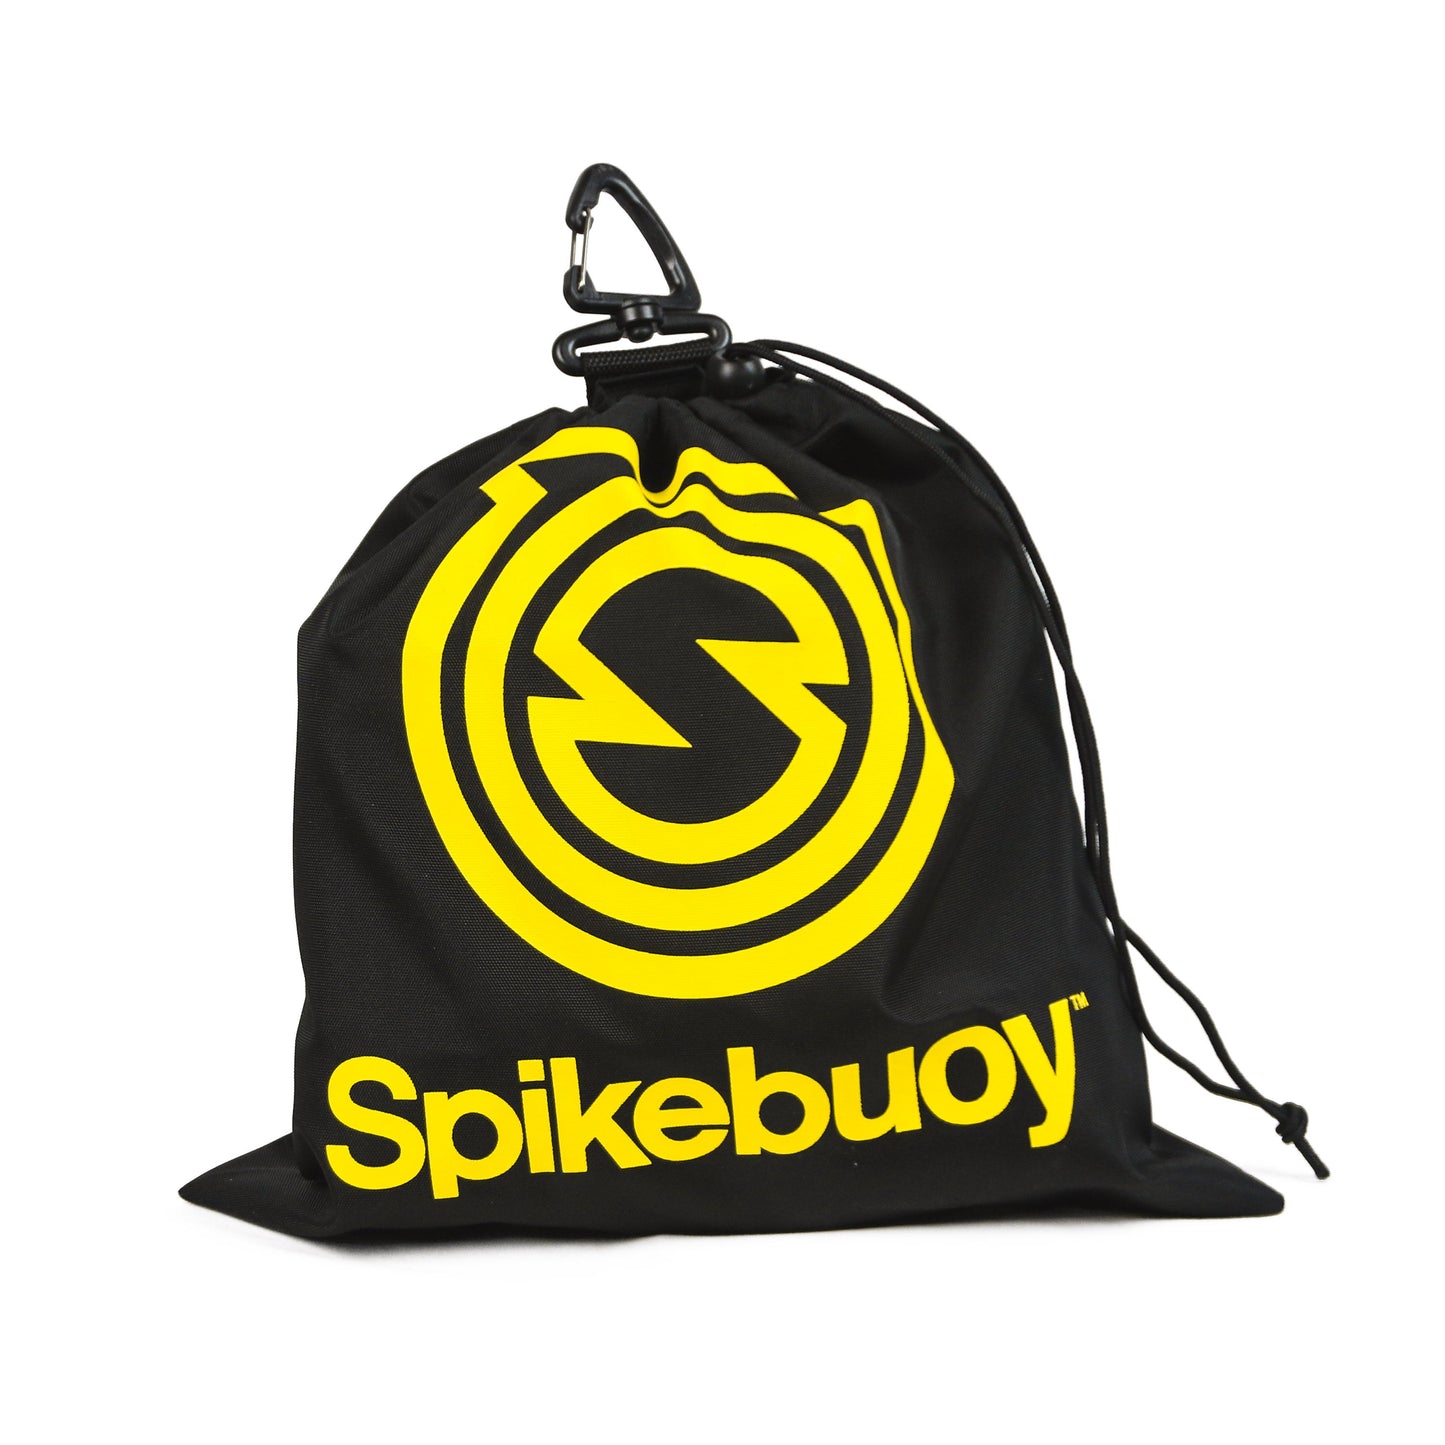 Spikeball Spikebouy